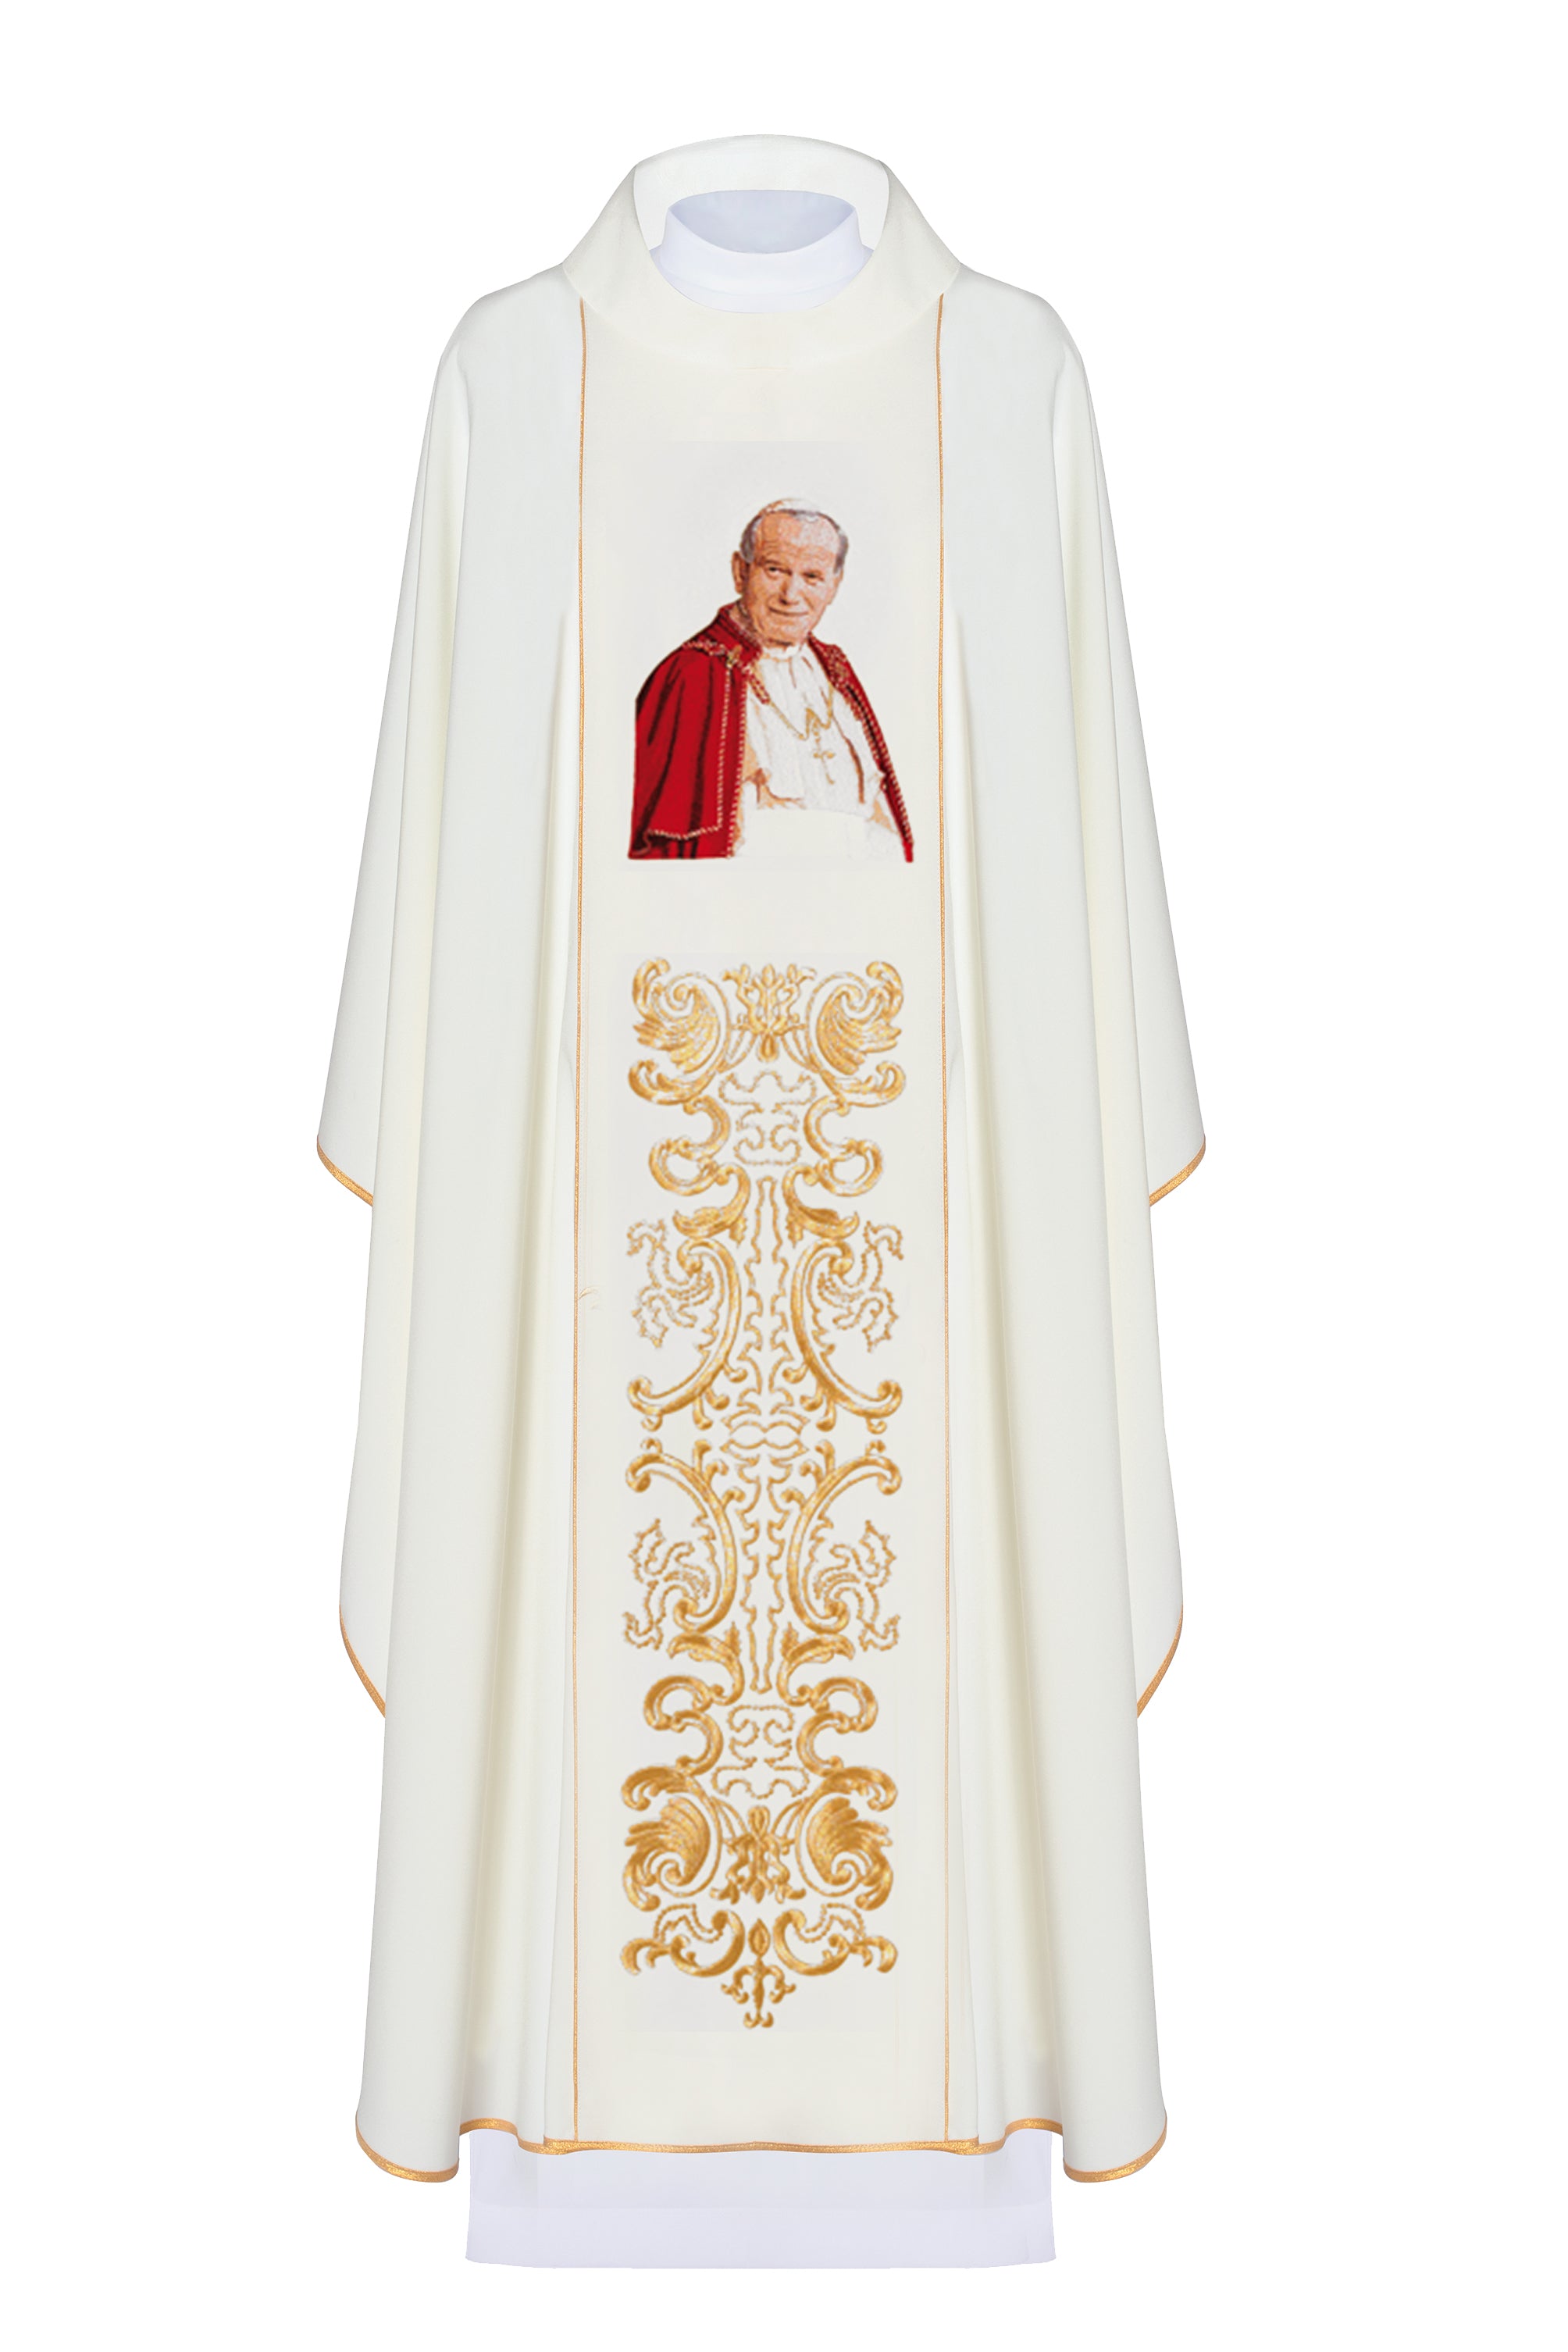 Ornat z wizerunkiem papieża Jana Pawła II